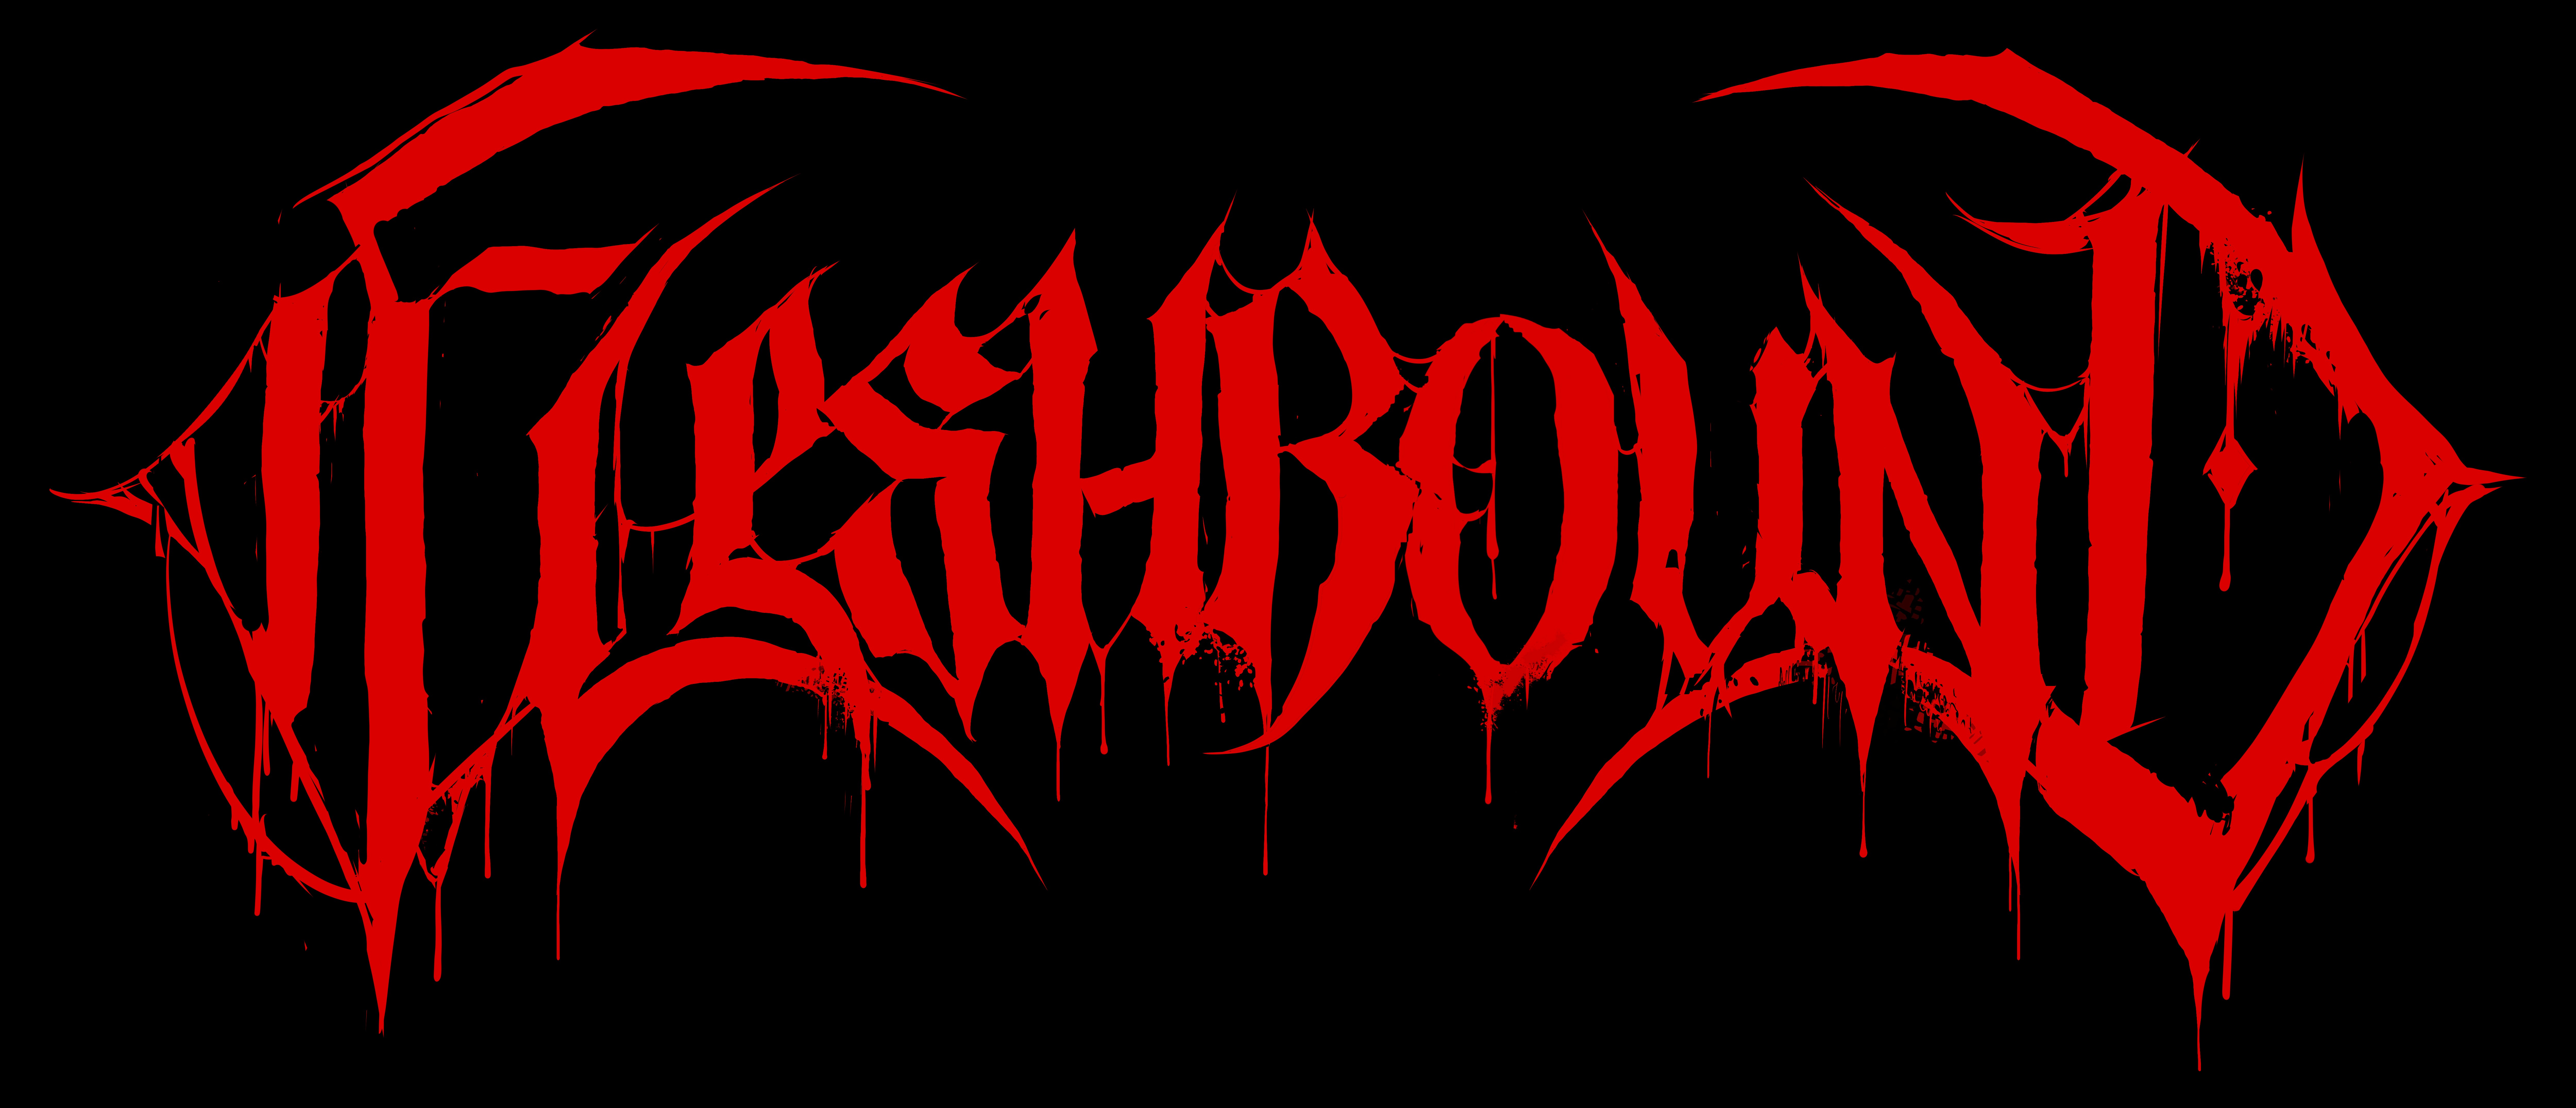 Fleshbound